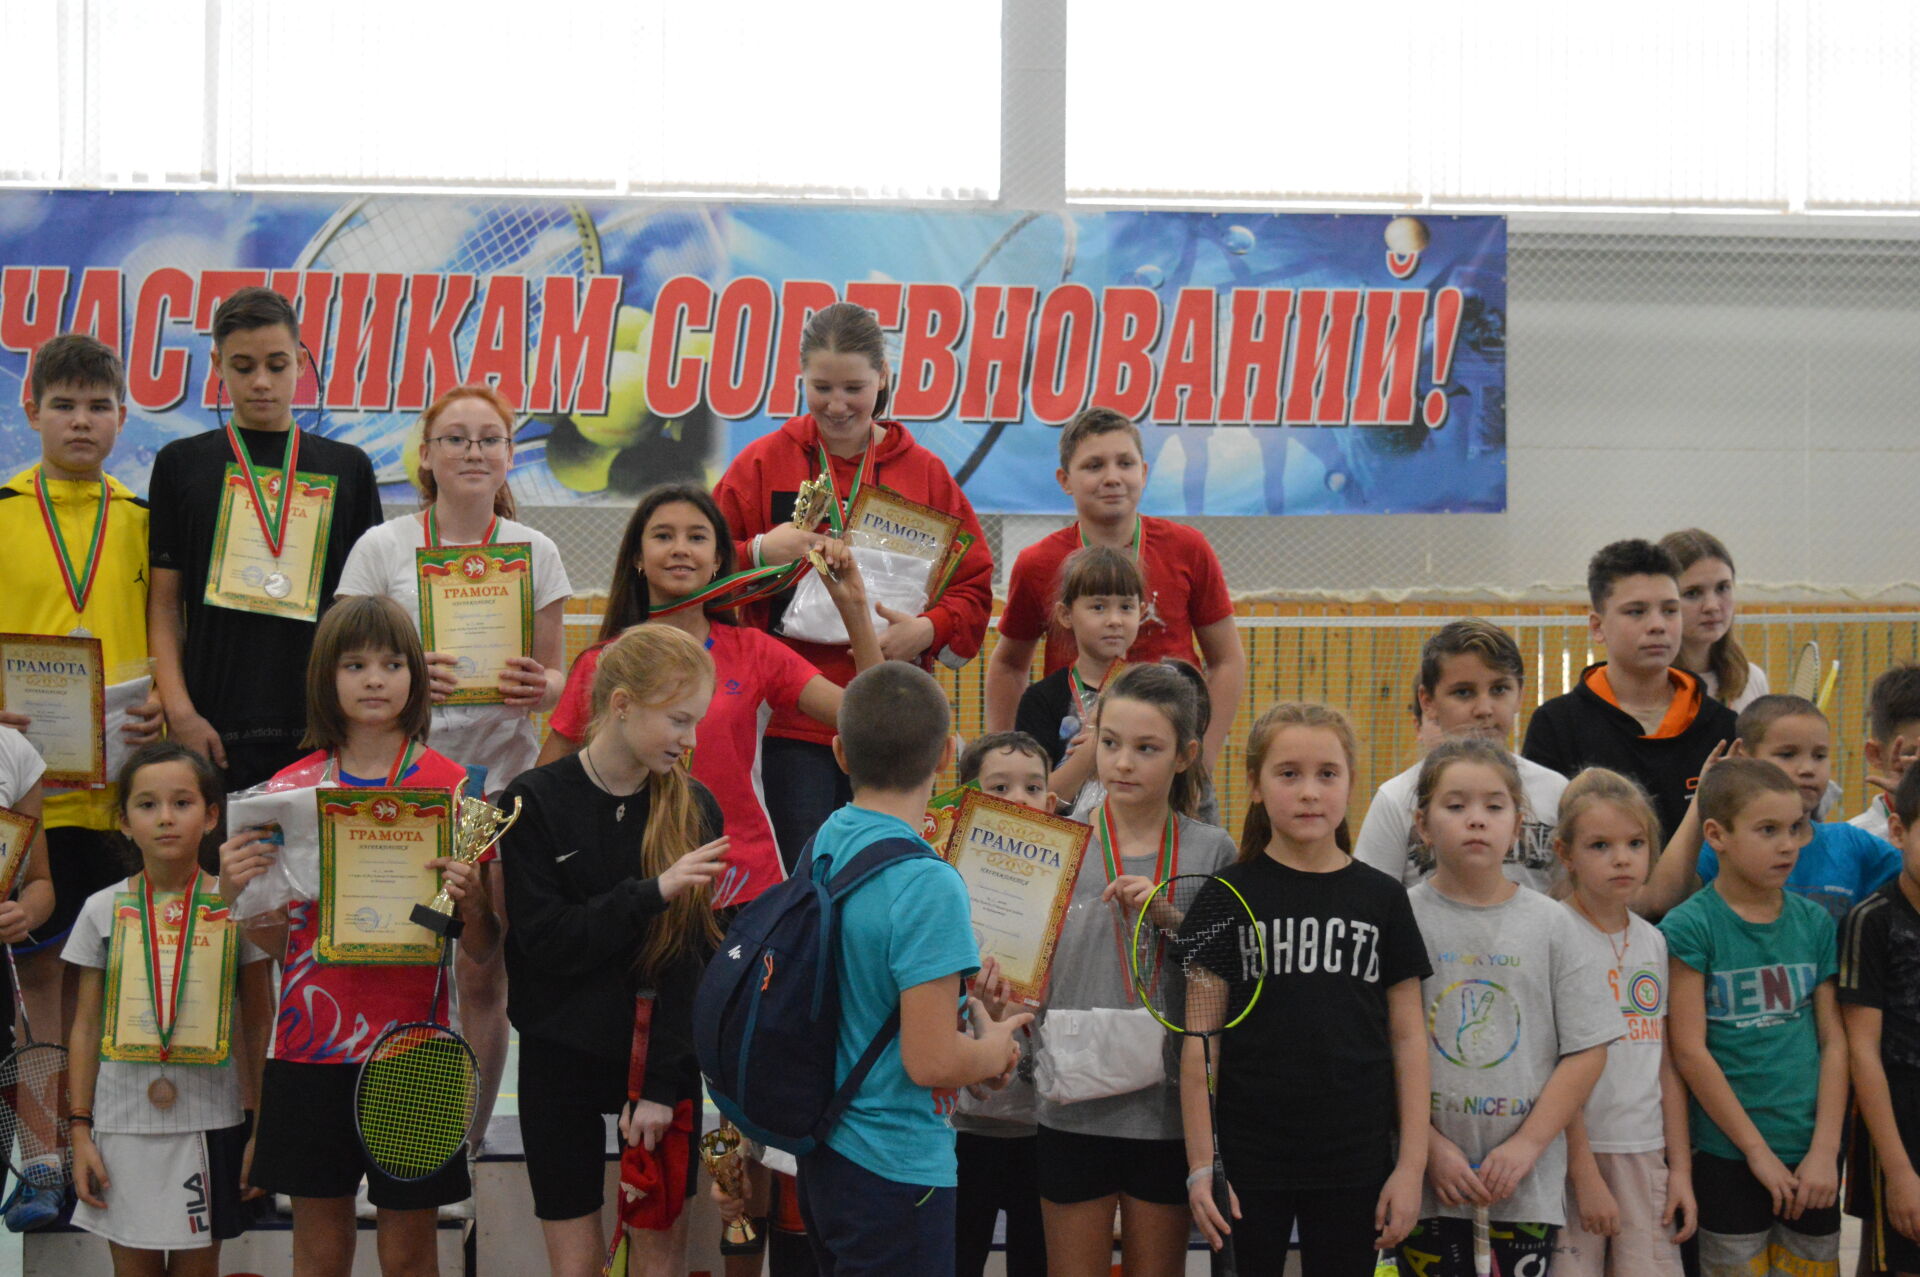 В СОК "Акчарлак" прошли районные соревнования по бадминтону